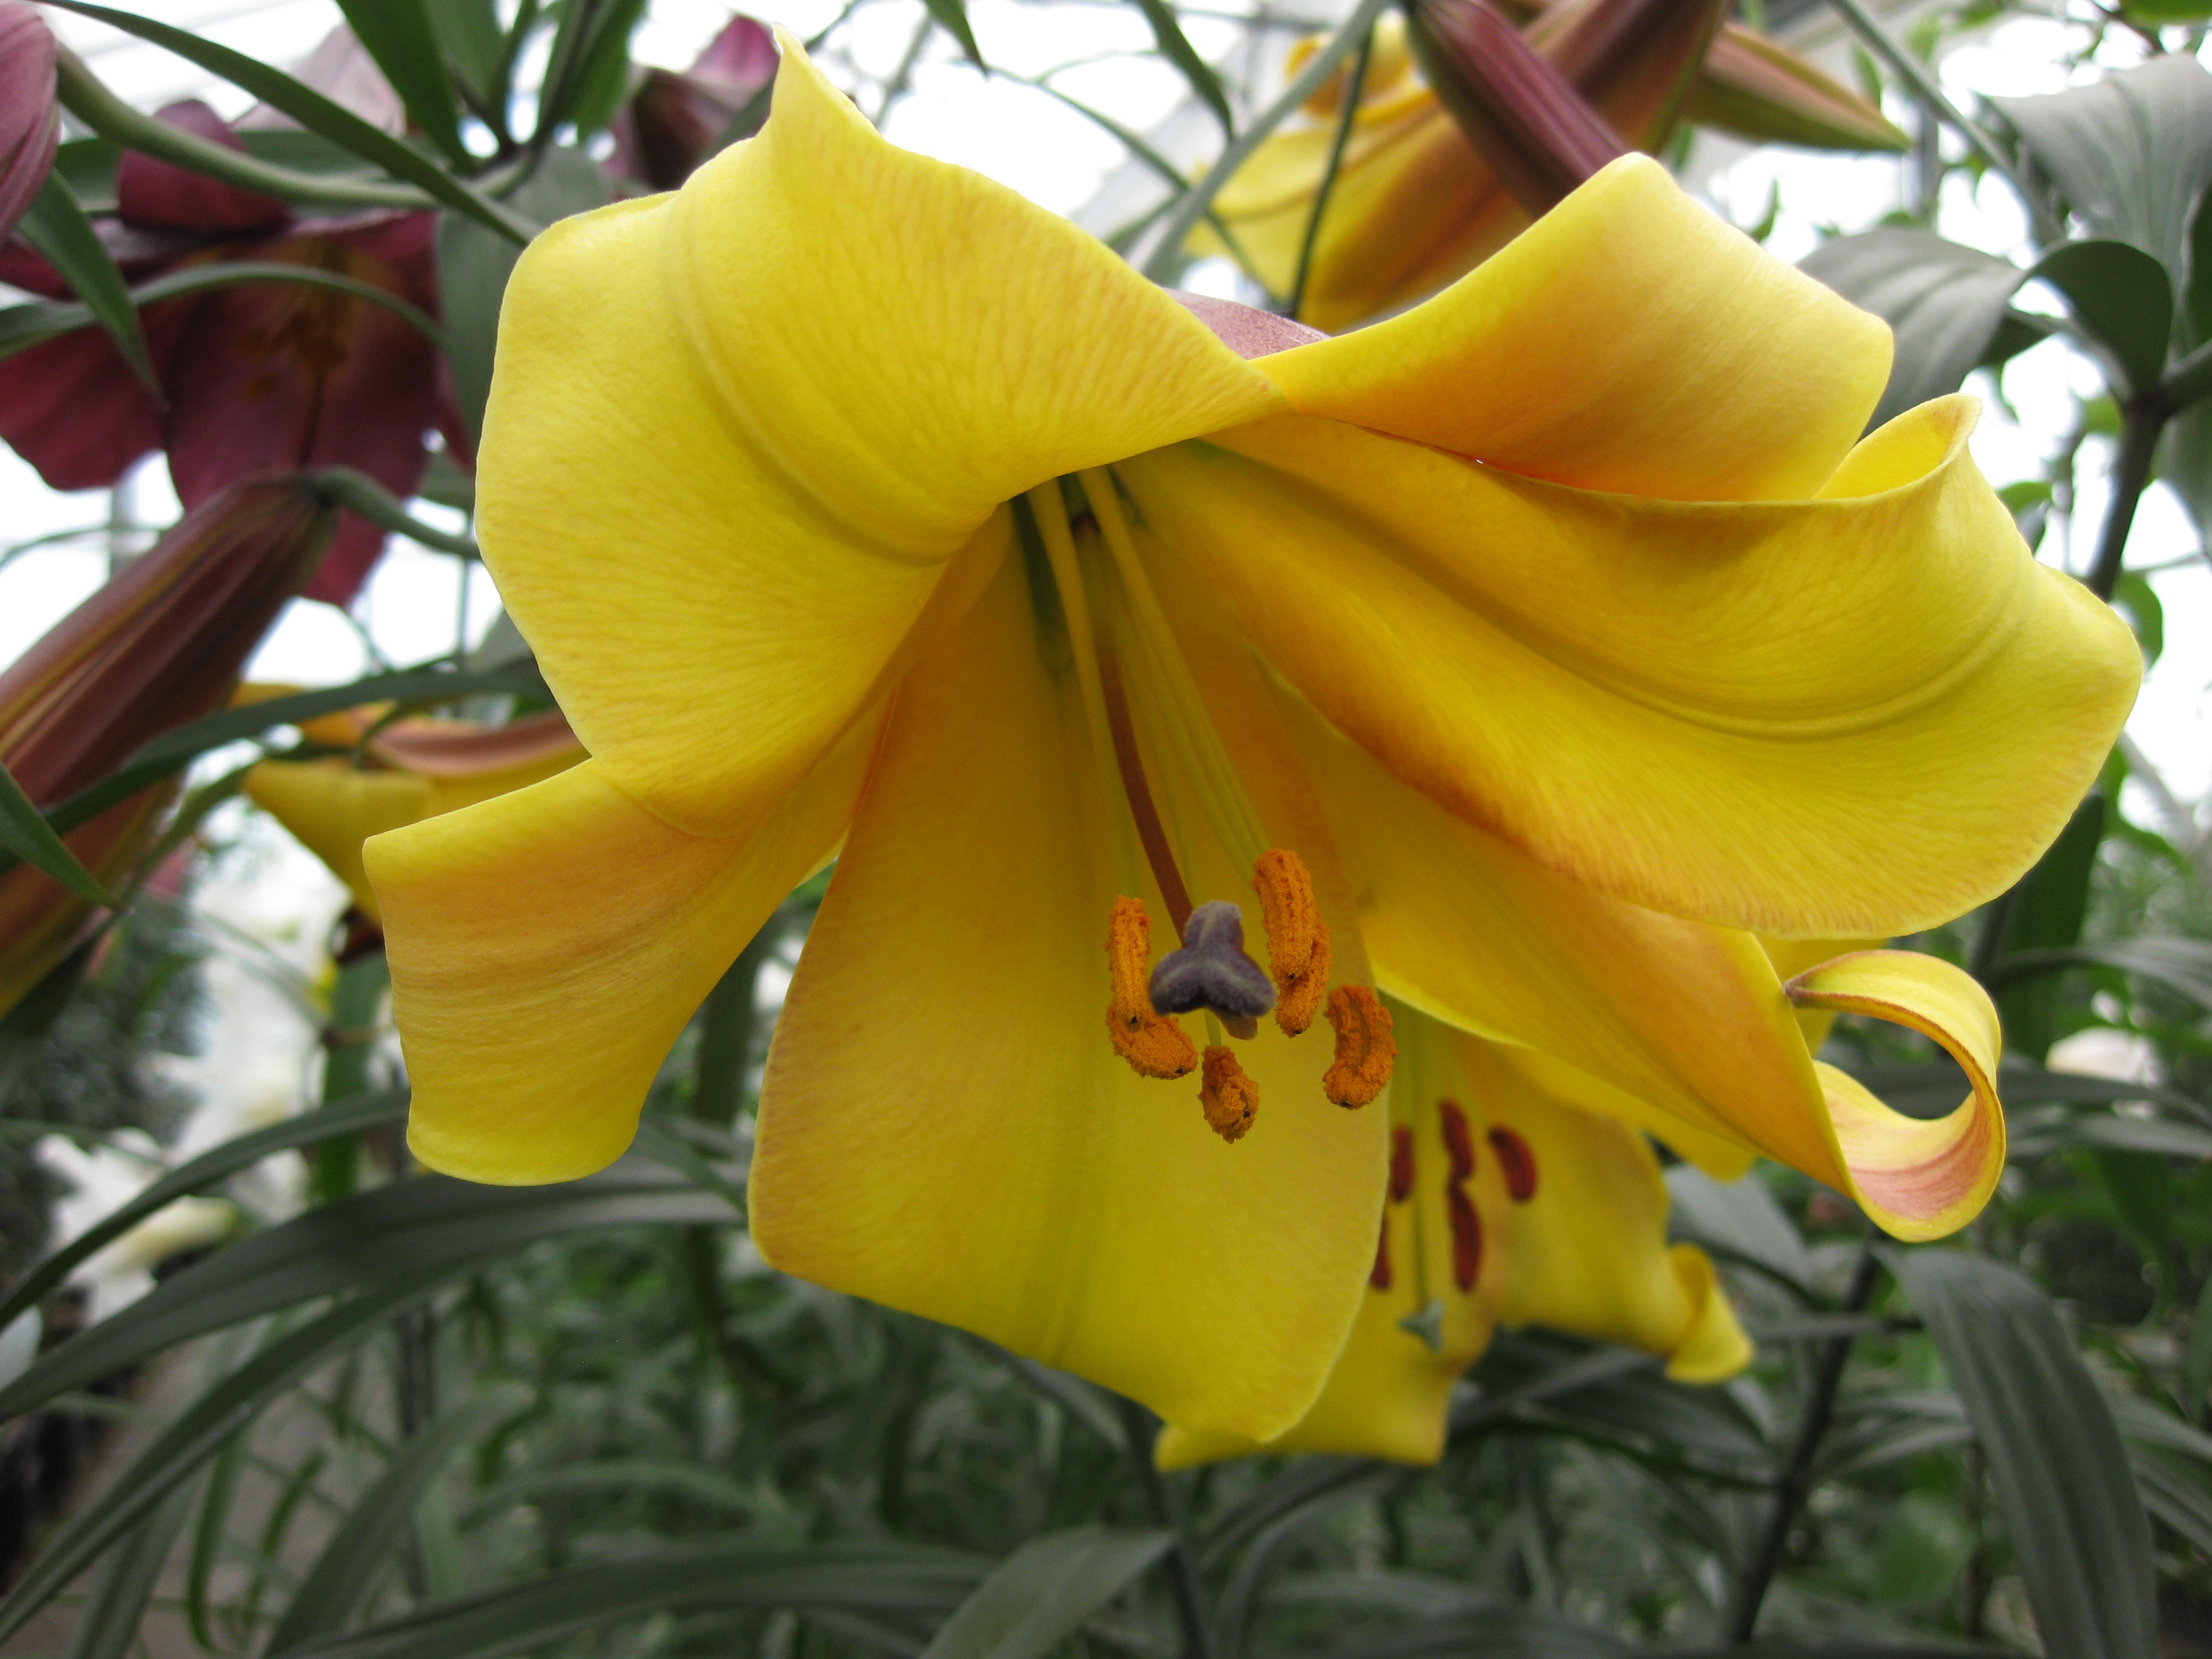 Tuyển tập hình ảnh hoa loa kèn vàng đẹp nhất - [Kích thước hình ảnh: 3648x2736 px]